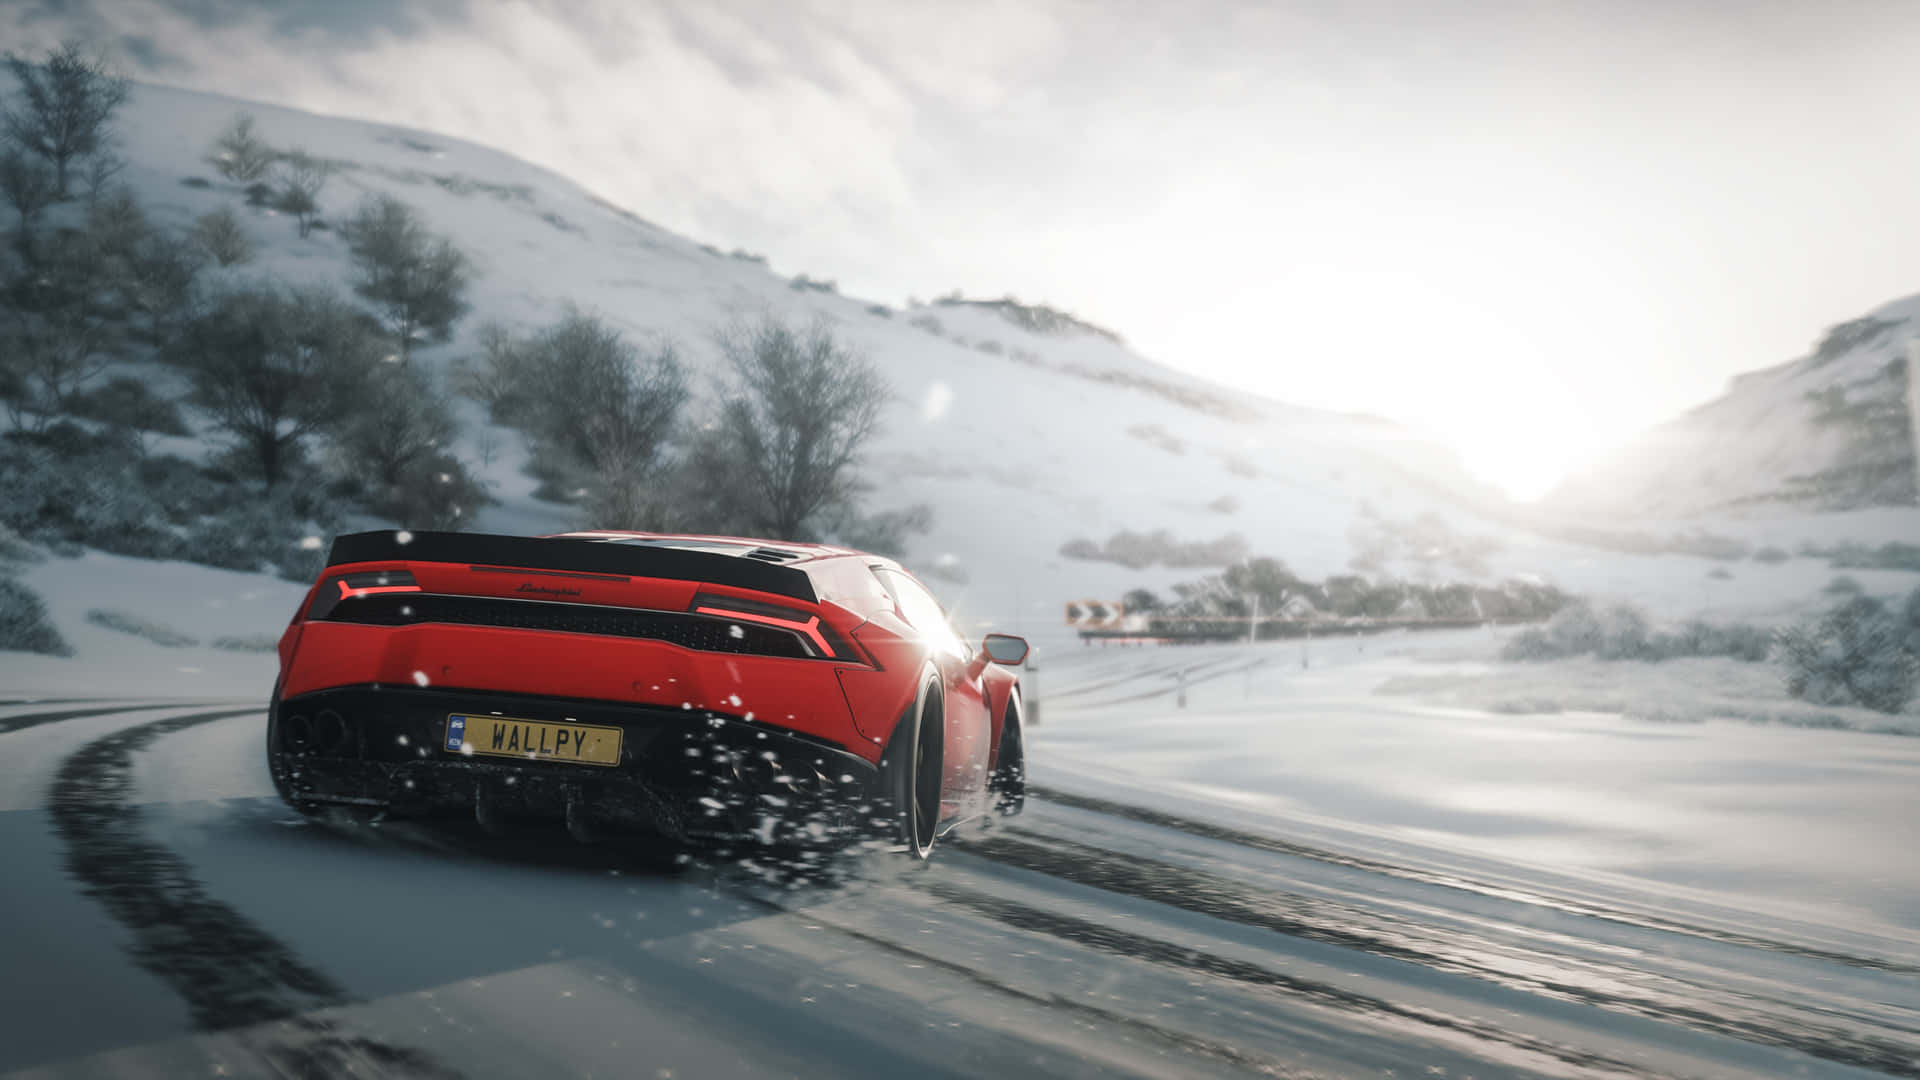 Fundode Tela Em Hd Do Forza Horizon 4 Com Um Lamborghini Vermelho Na Neve. Papel de Parede